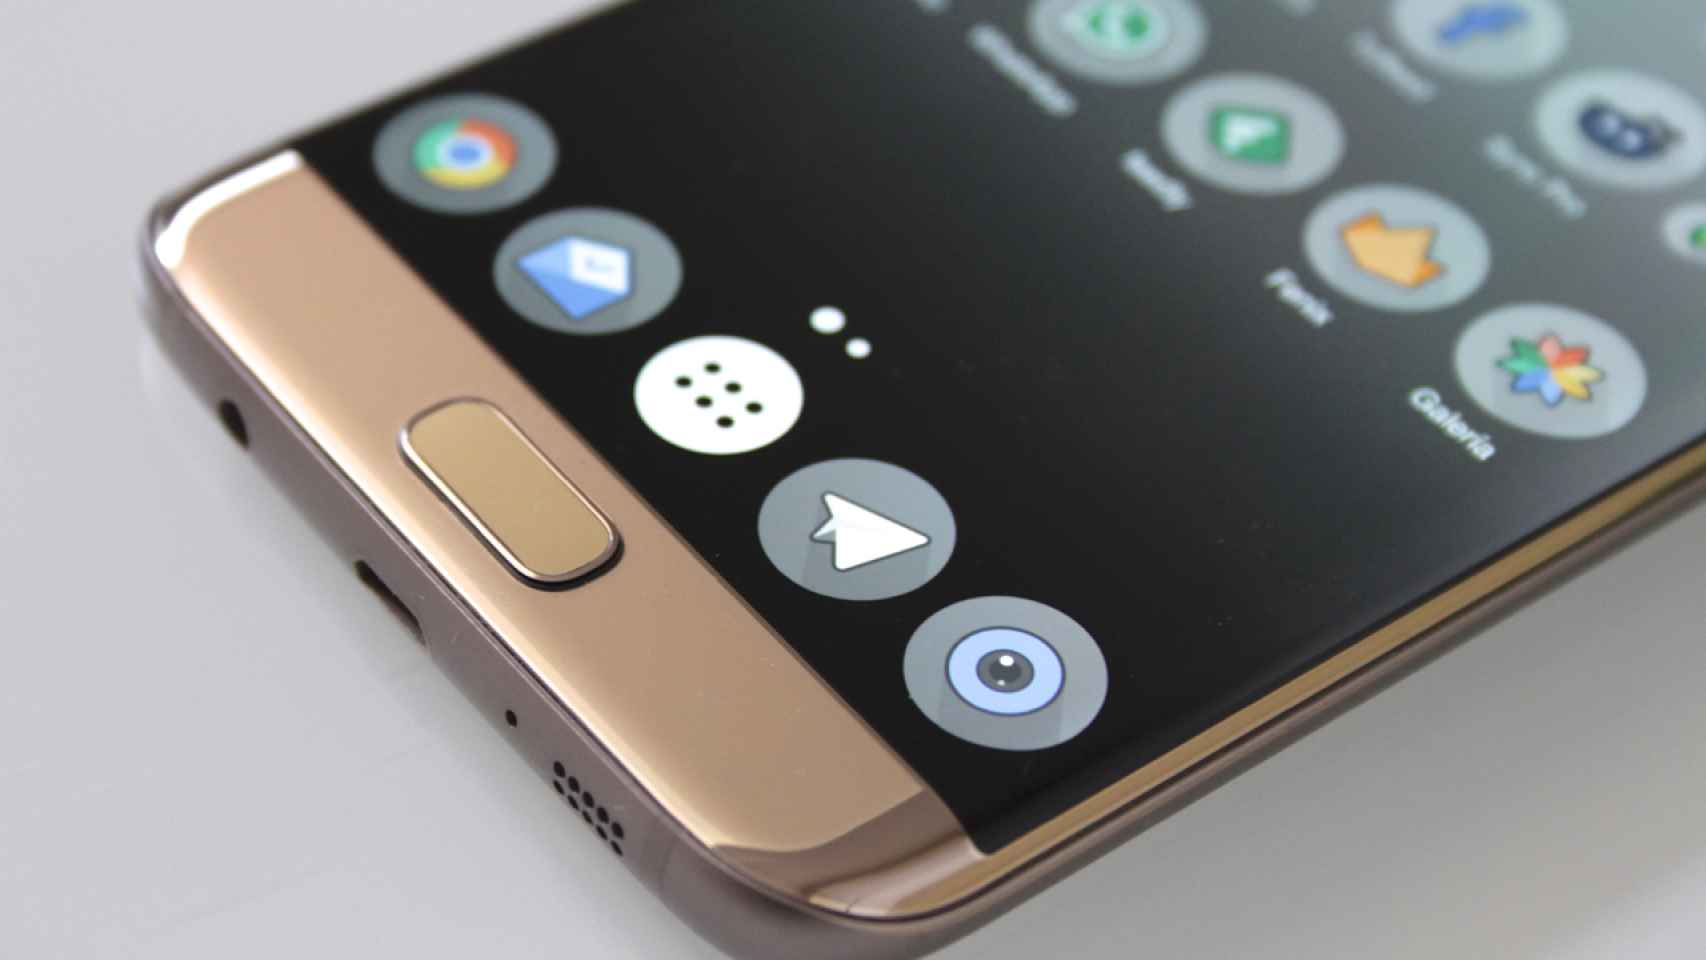 Samsung Galaxy S7 Edge. Análisis a fondo y opinión